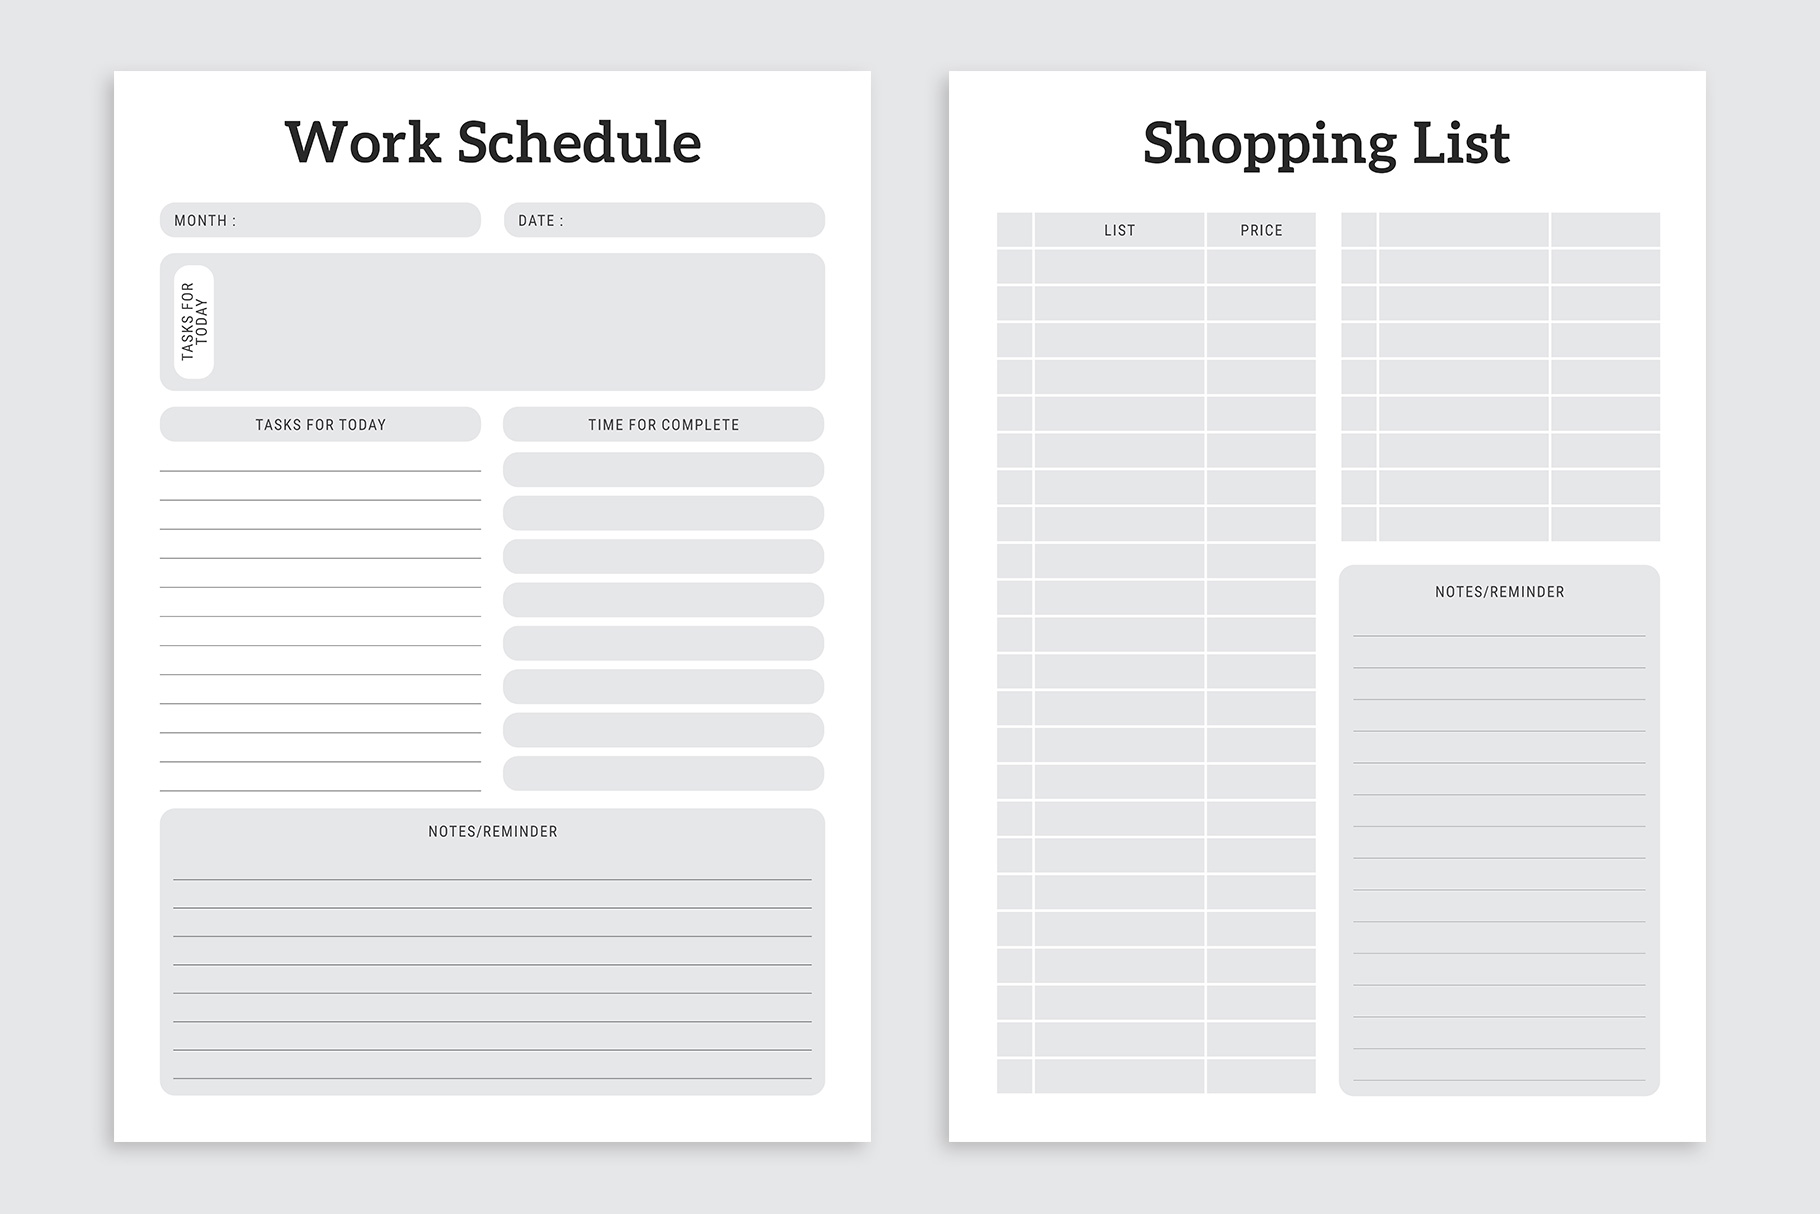 Work Schedule & Shopping List designs.